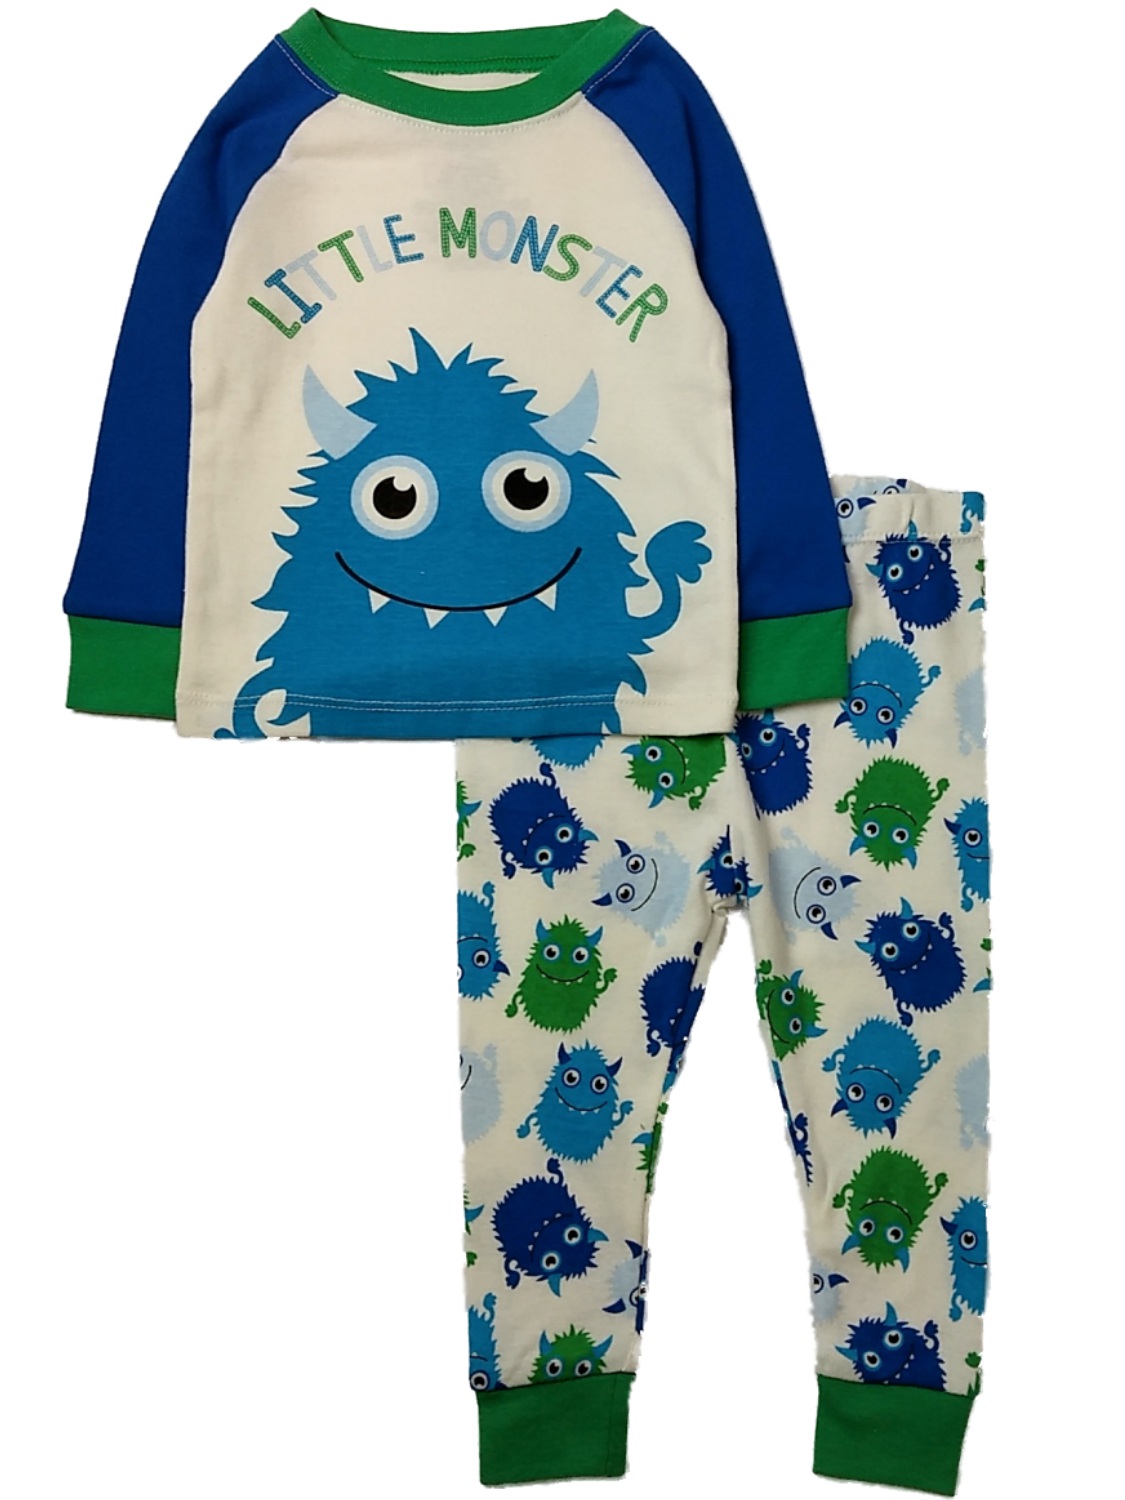 WonderNation Infant Boys White Little Monster Pajama Set Blue & Green Monsters Sleep Set12m